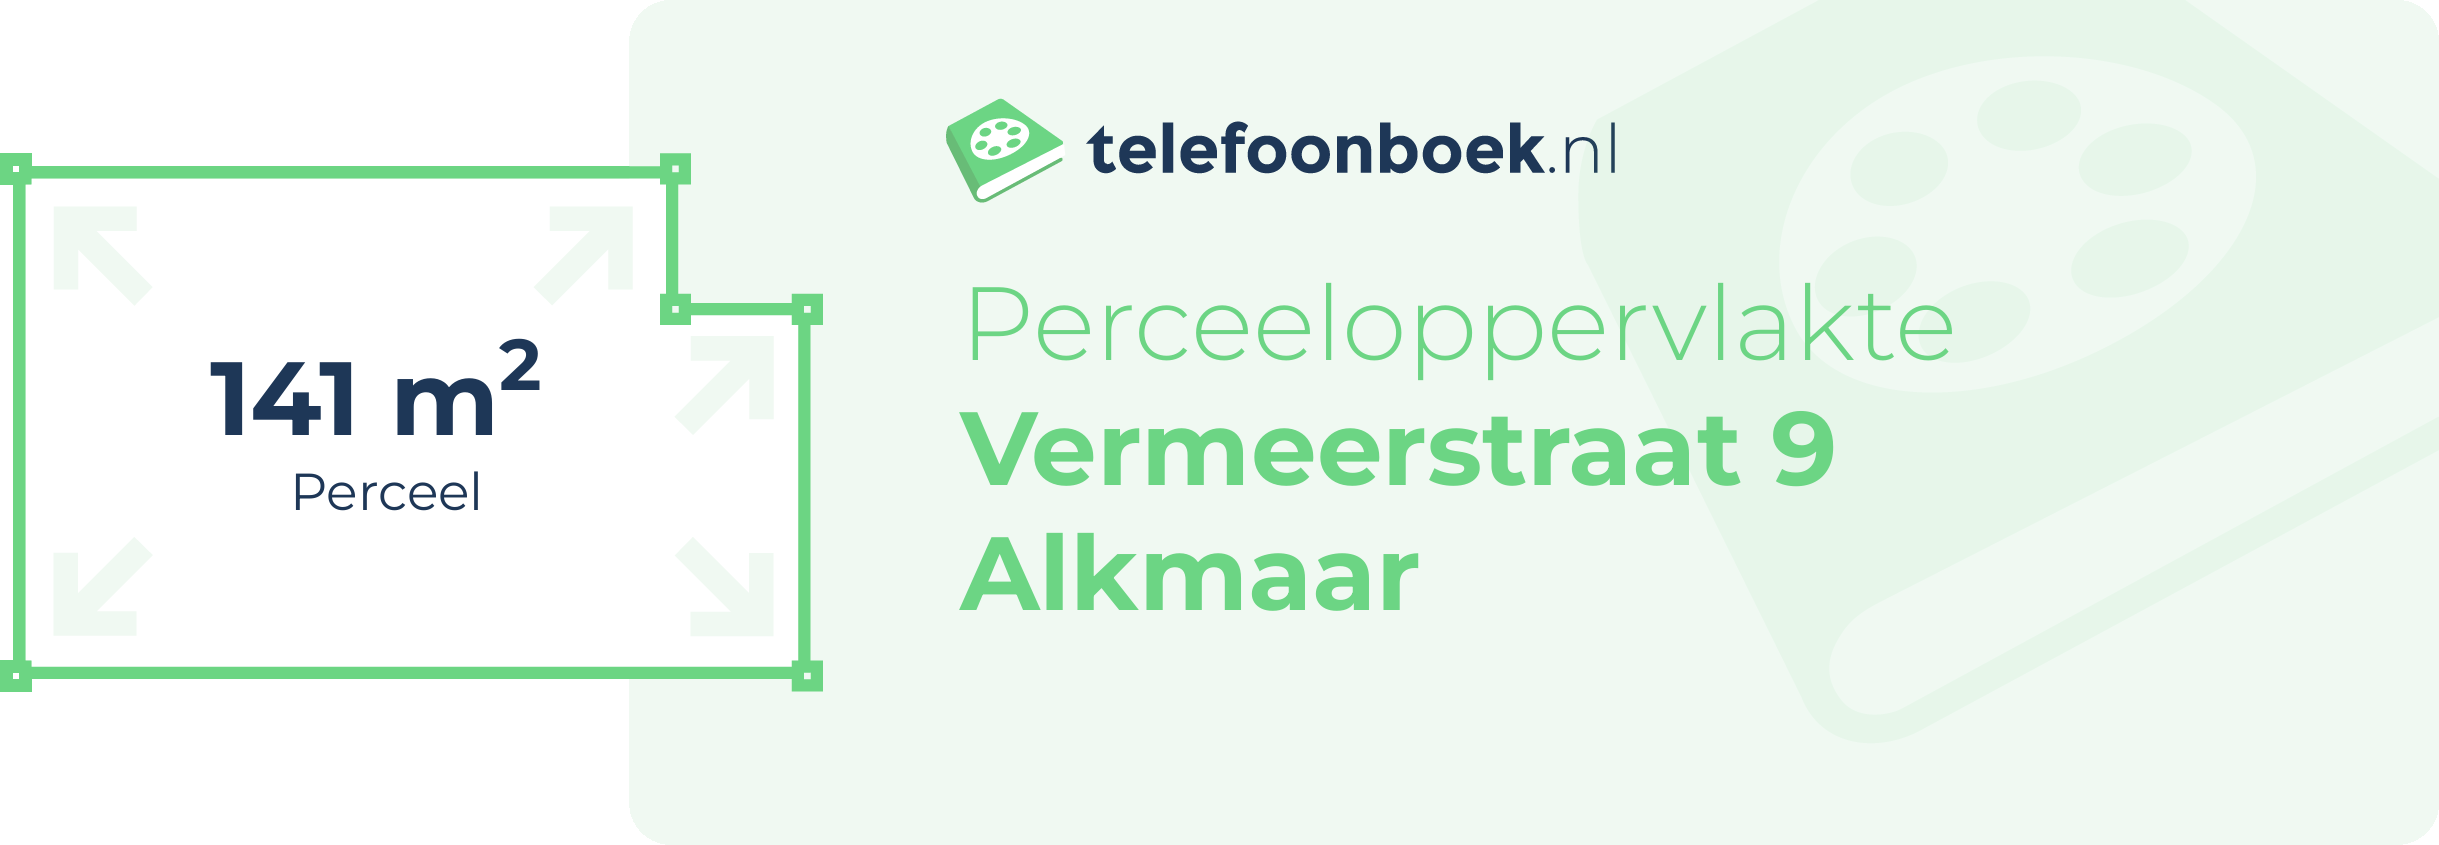 Perceeloppervlakte Vermeerstraat 9 Alkmaar